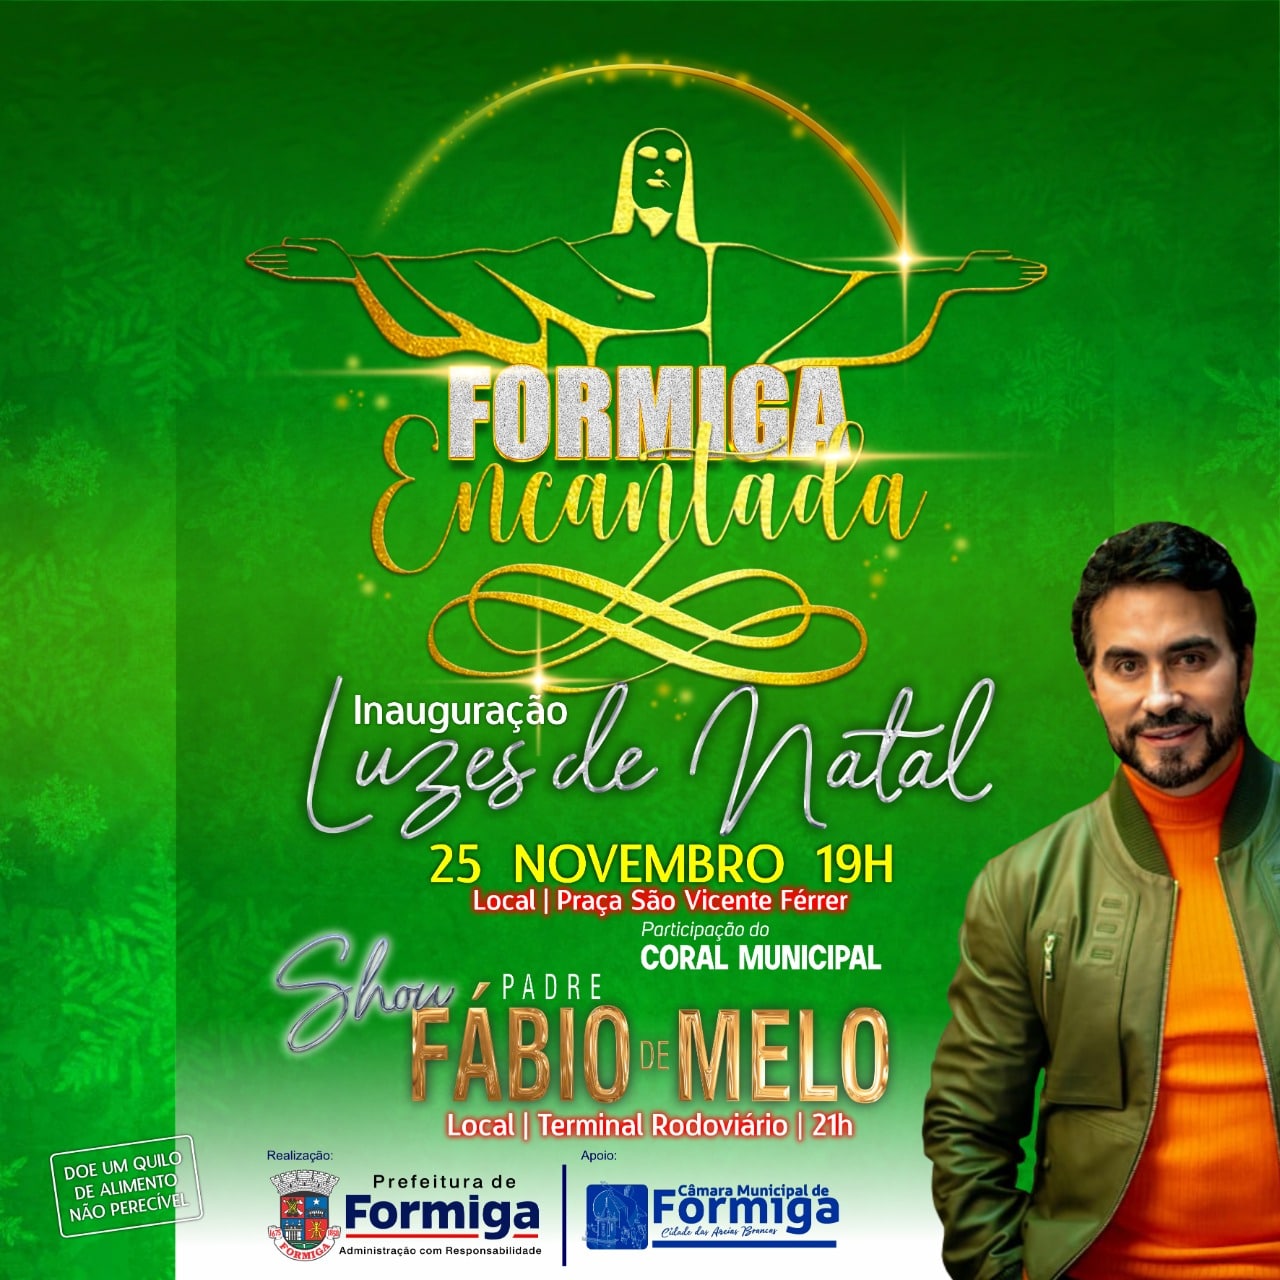 Show com Padre Fábio de Melo será realizado nesta sexta-feira em Formiga -  Portal G37